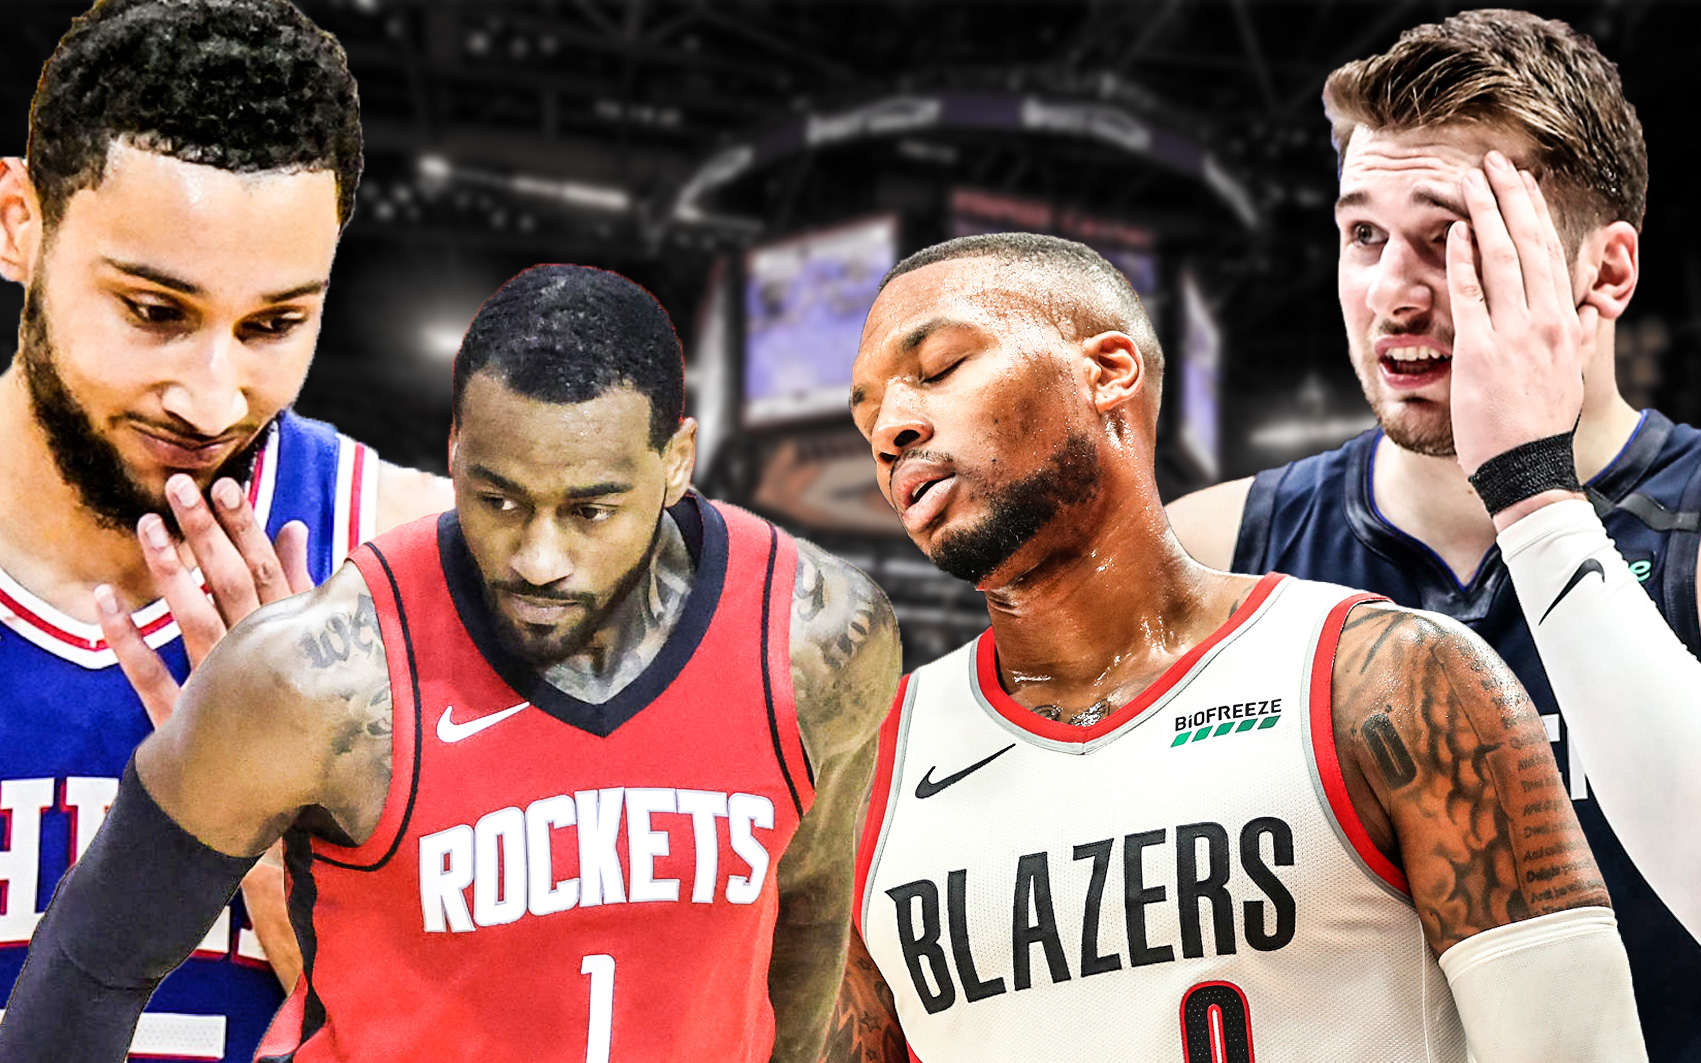 Top ngôi sao trong thế tiến thoái lưỡng nan nhất trước mùa giải NBA 2021/2022